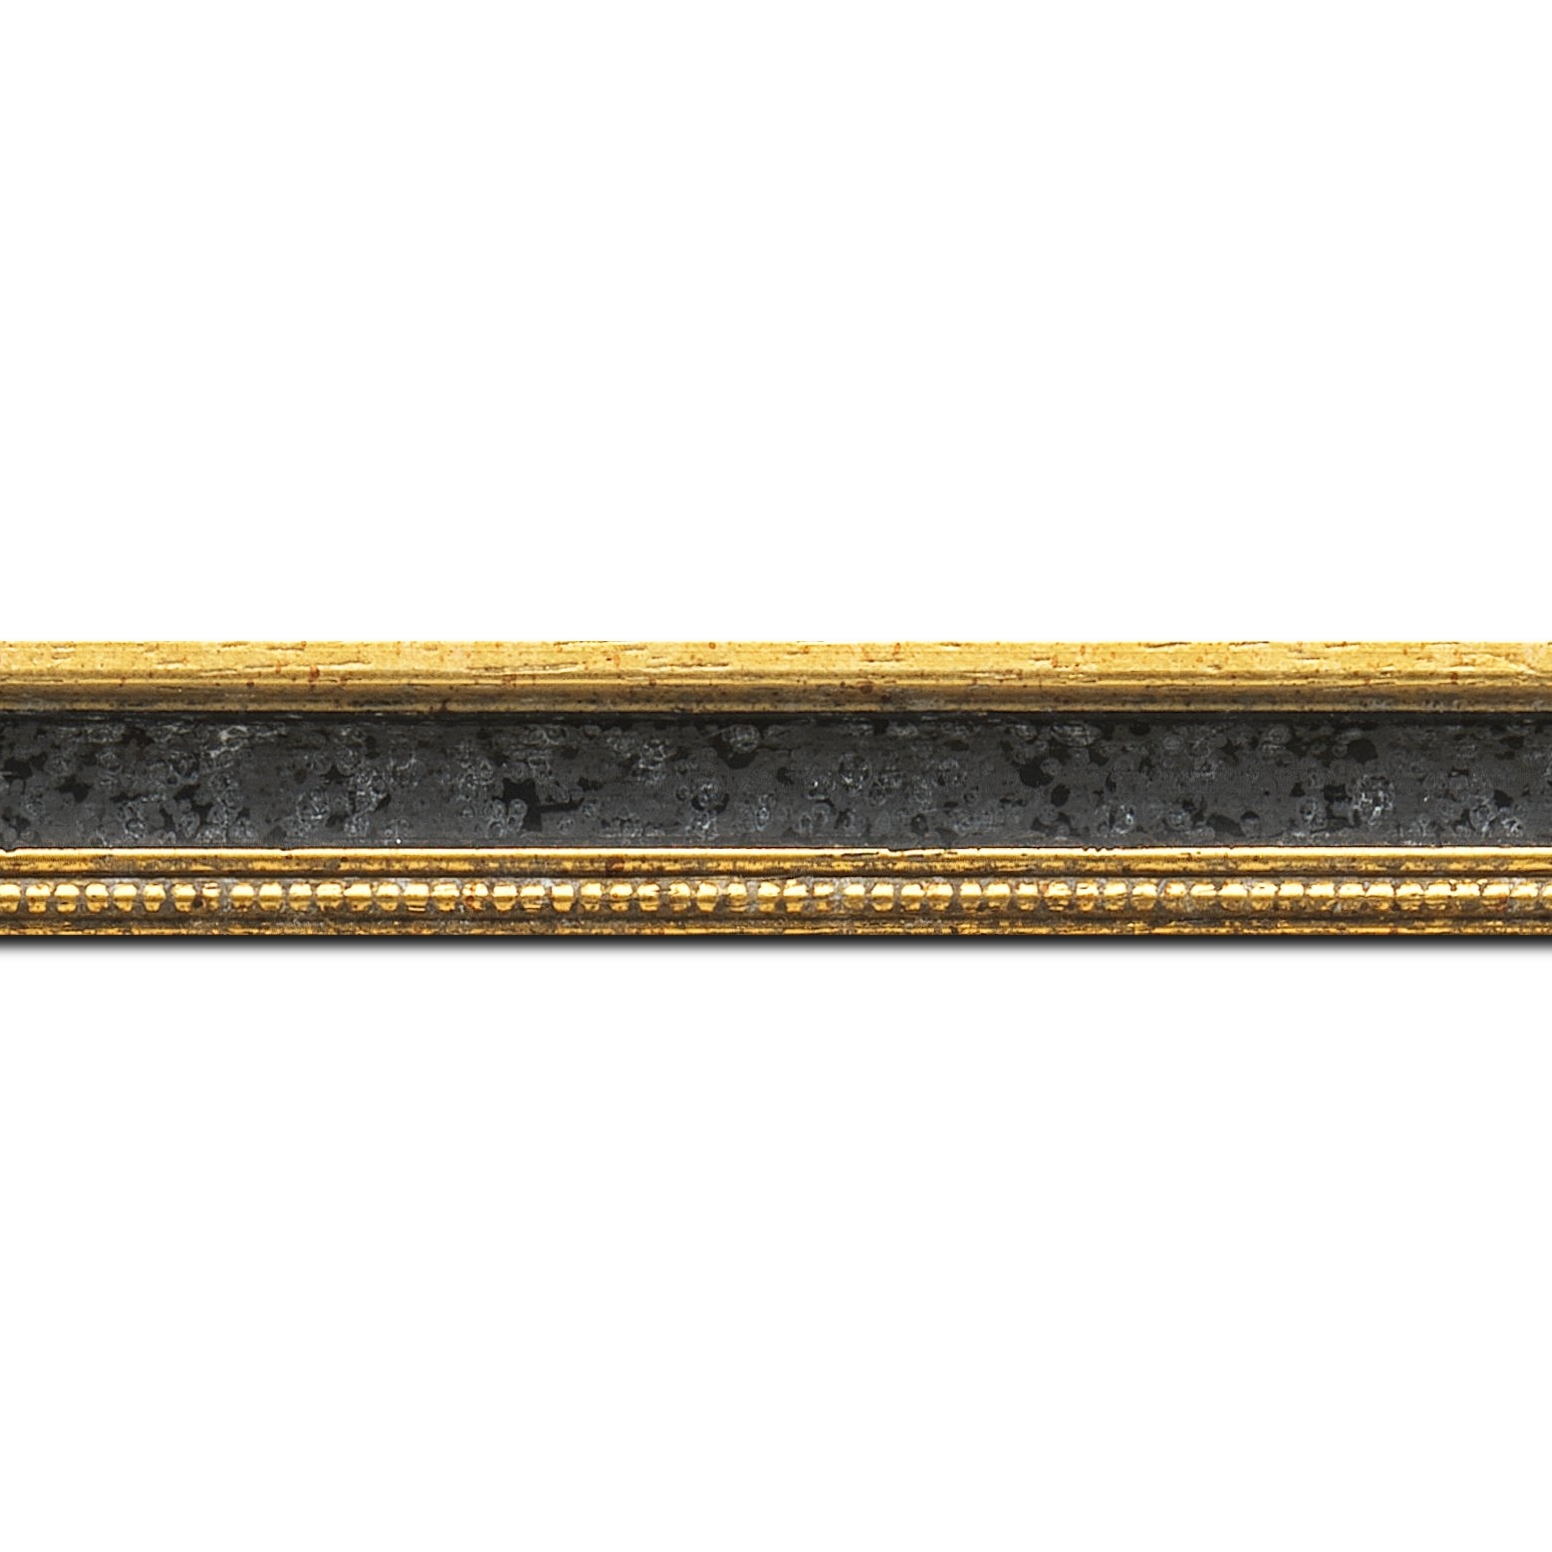 Baguette longueur 1.40m bois profil incurvé largeur 2.4cm  or antique gorge noir filet perle or